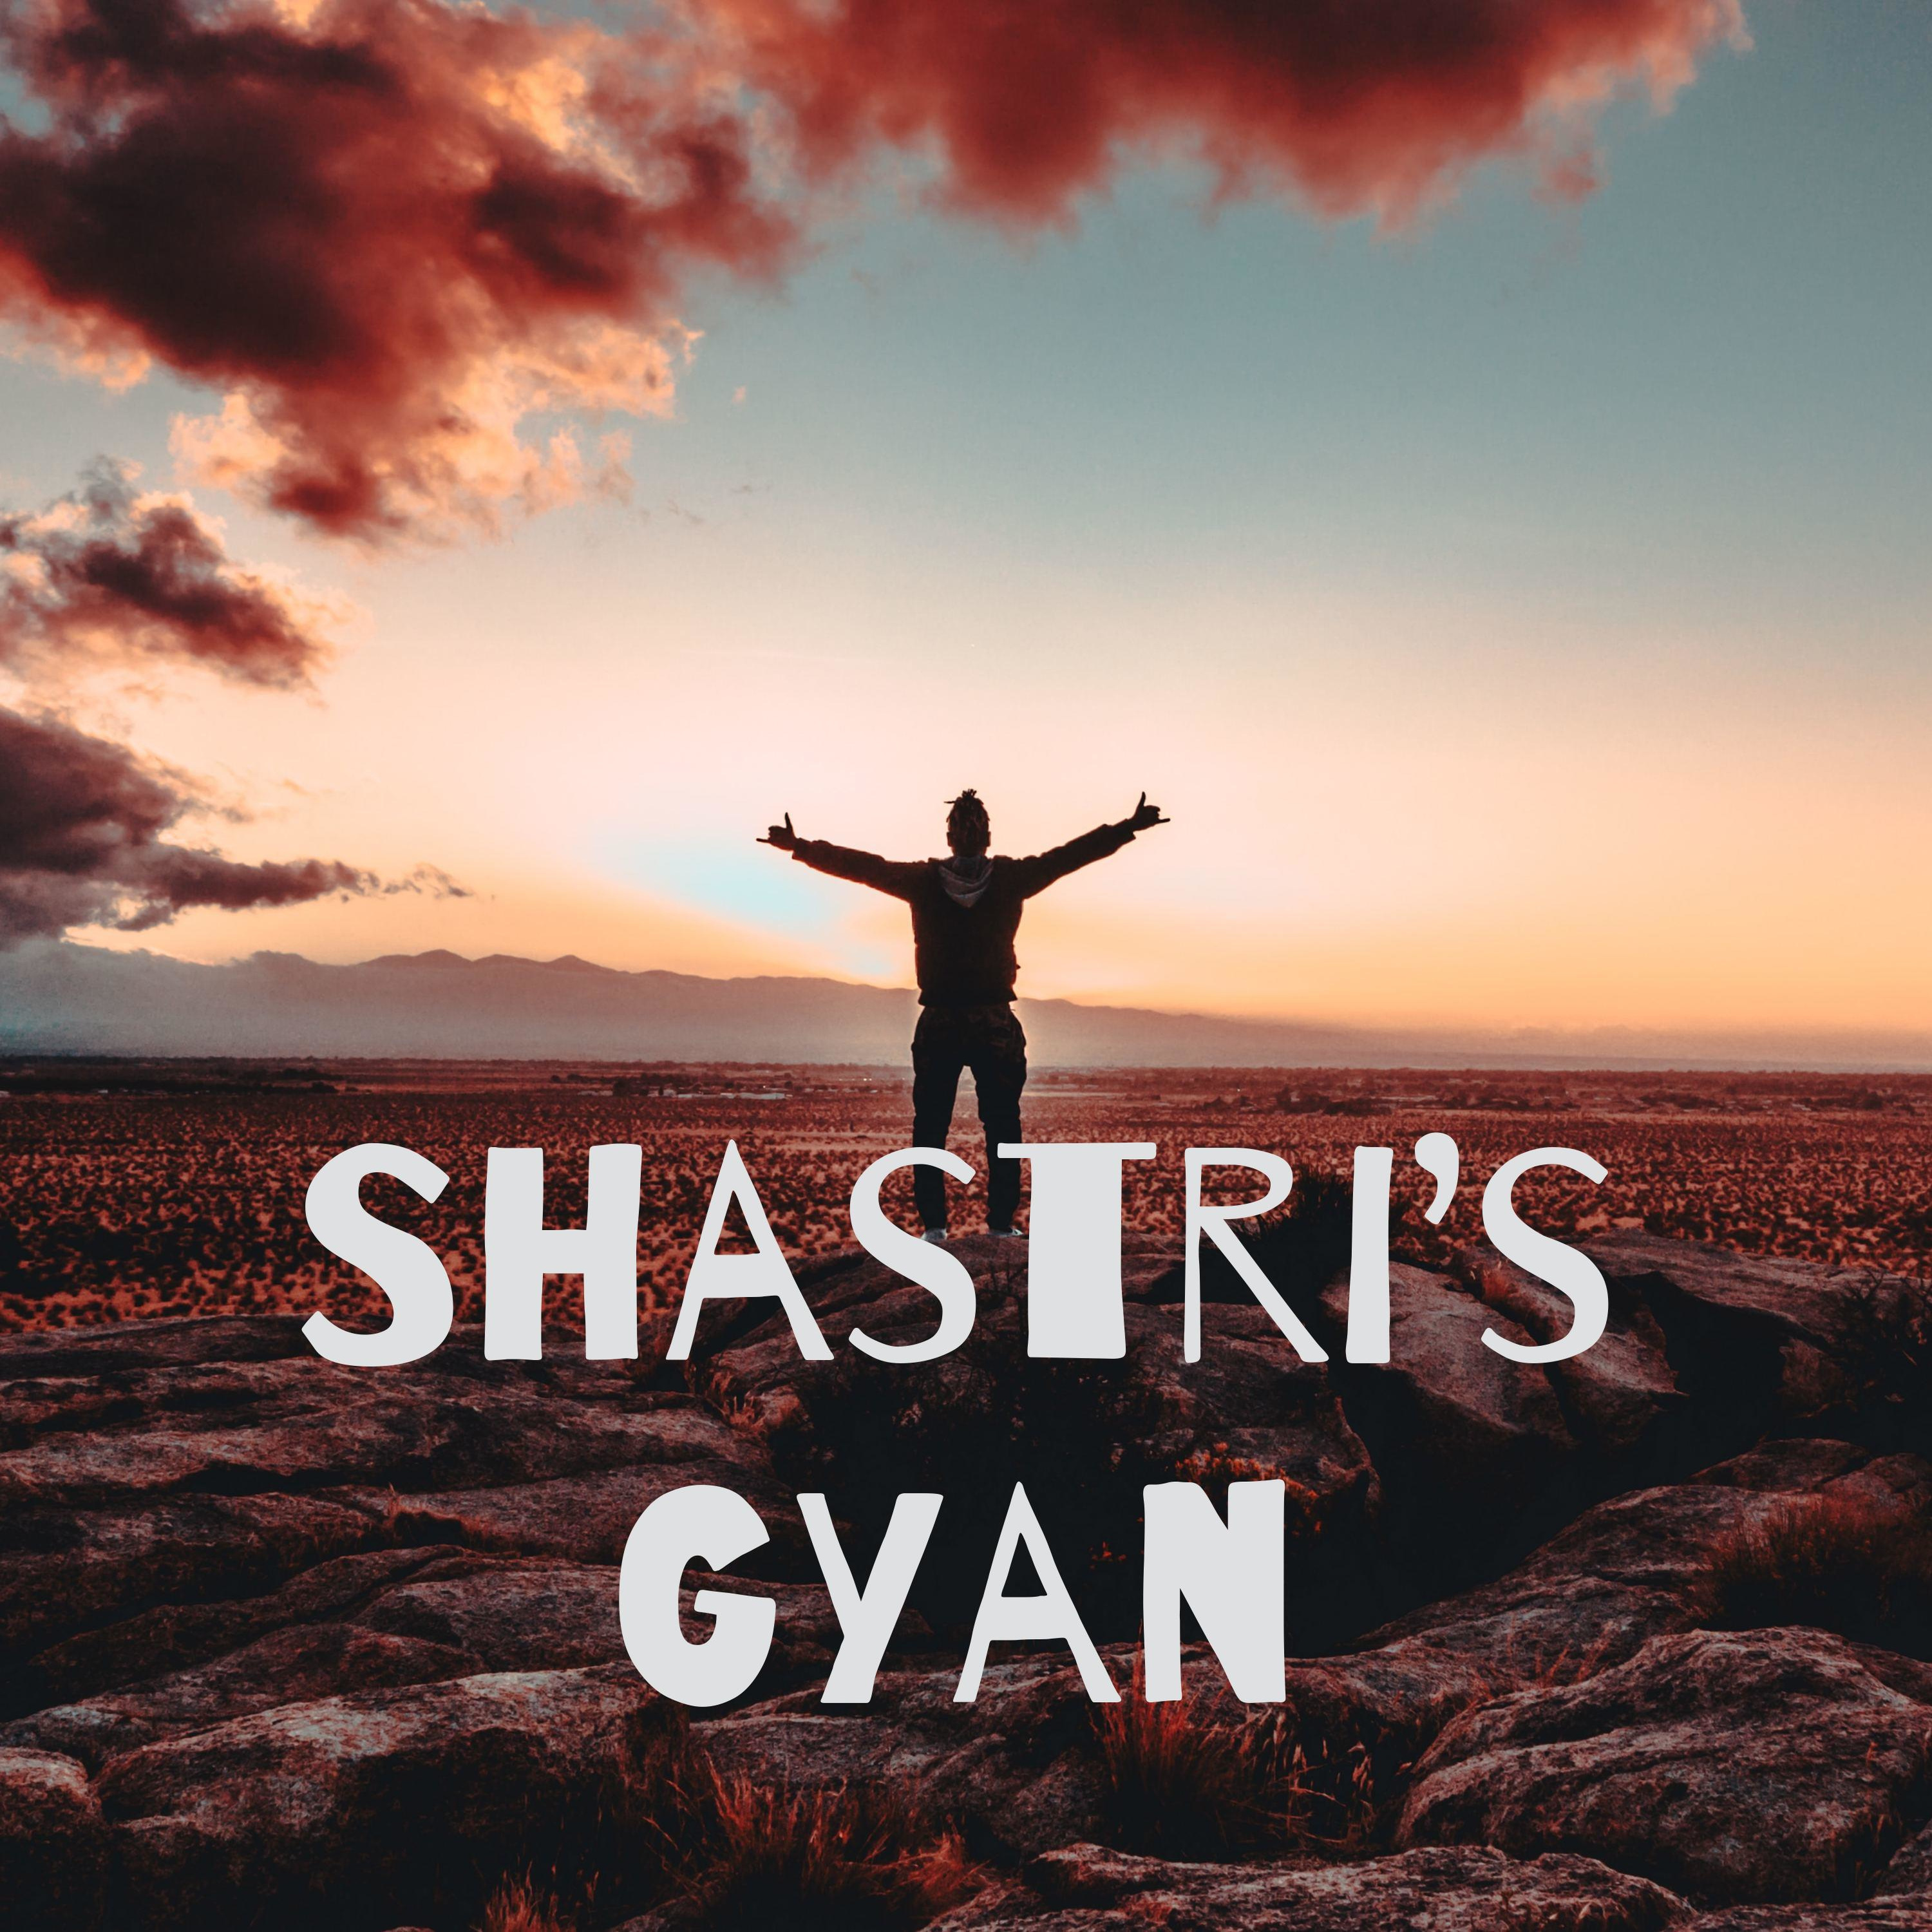 Shastri's Gyan (Trailer)